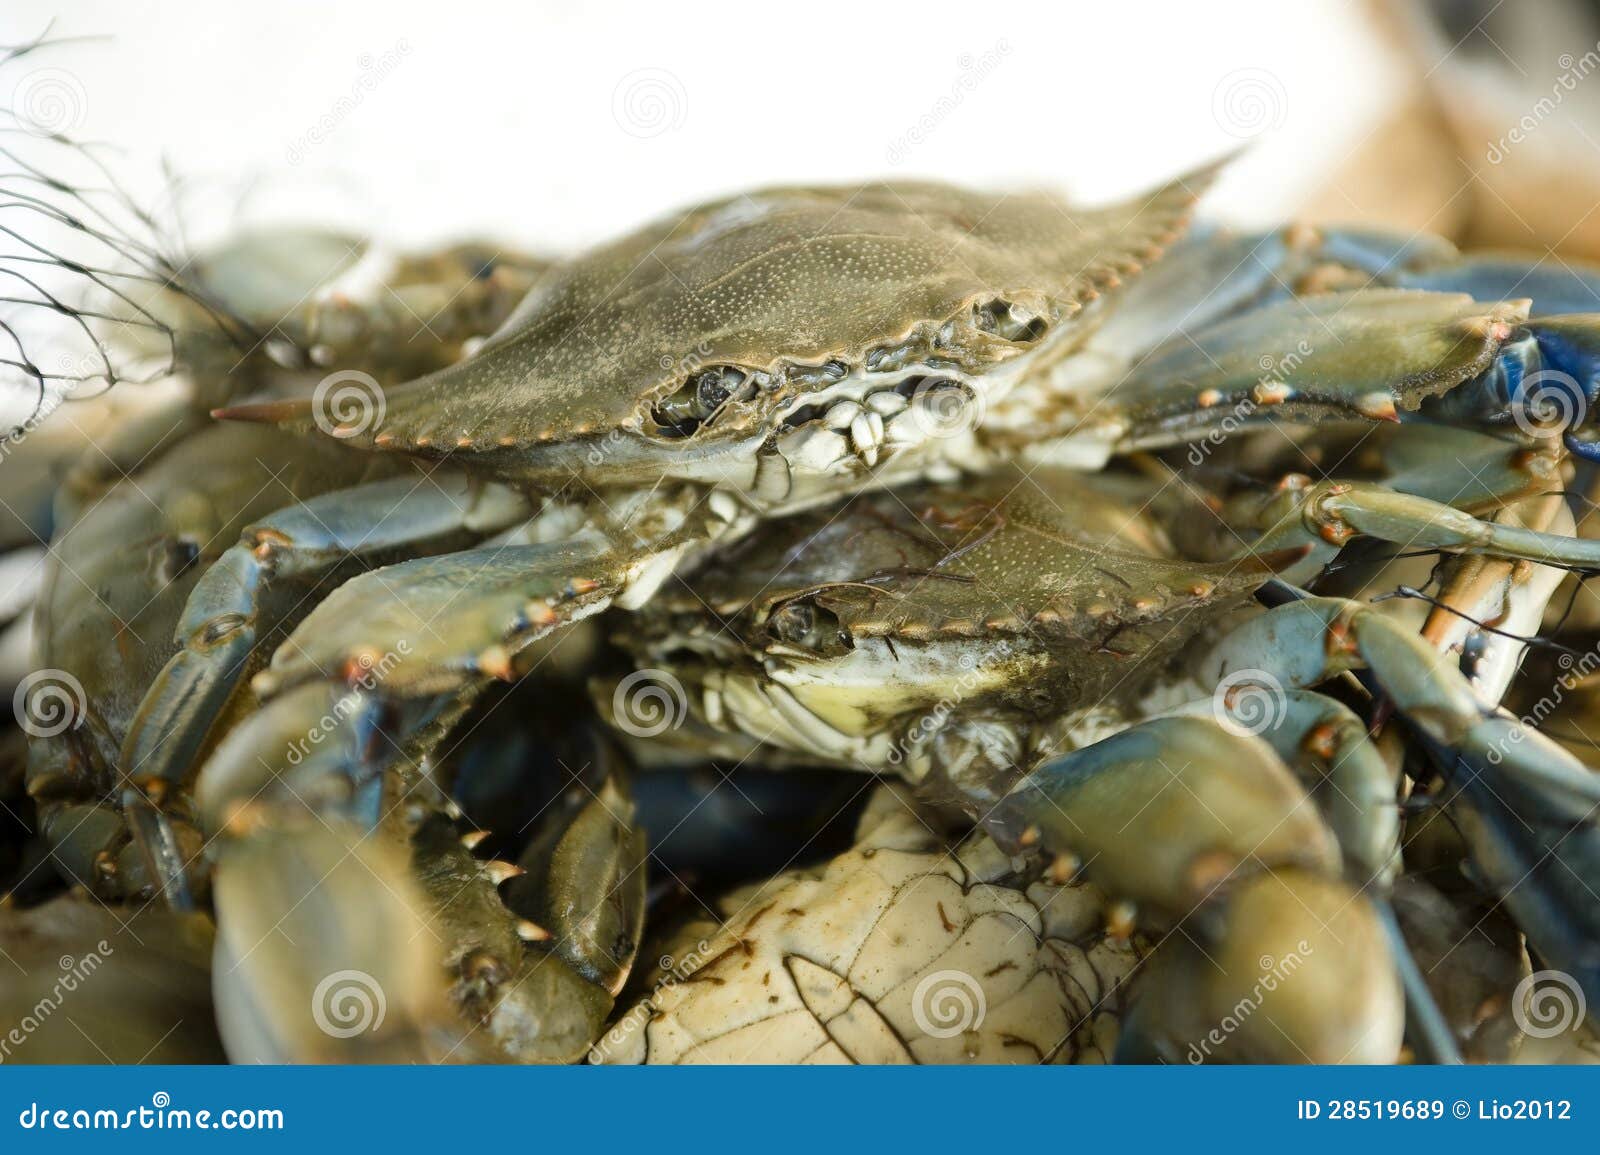 fresh crabs at a fish market